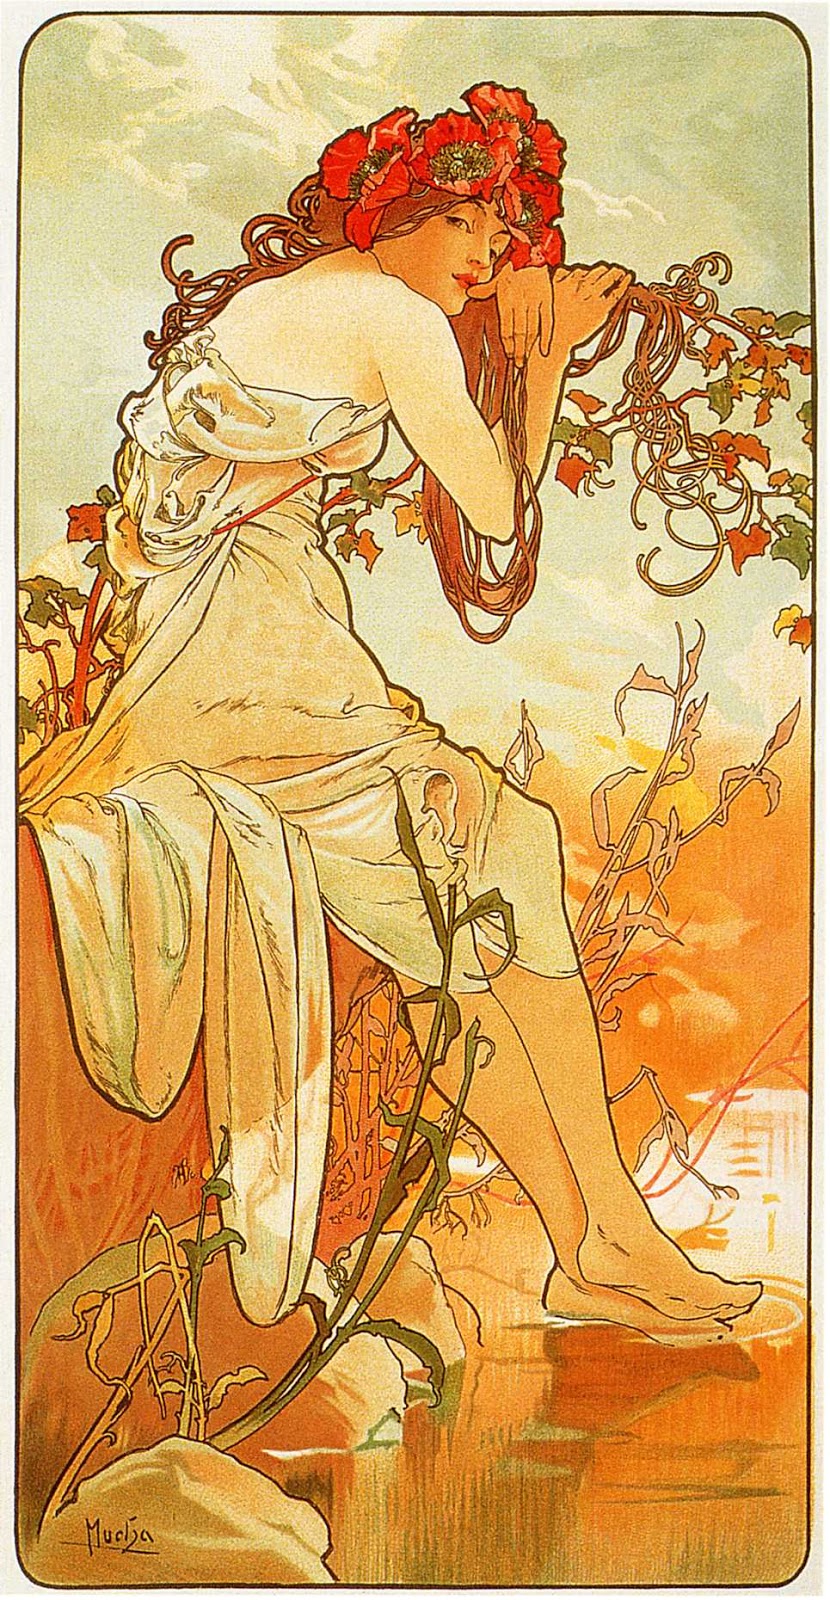 MOSTRE: L’Art Nouveau di Alphonse Mucha al Vittoriano